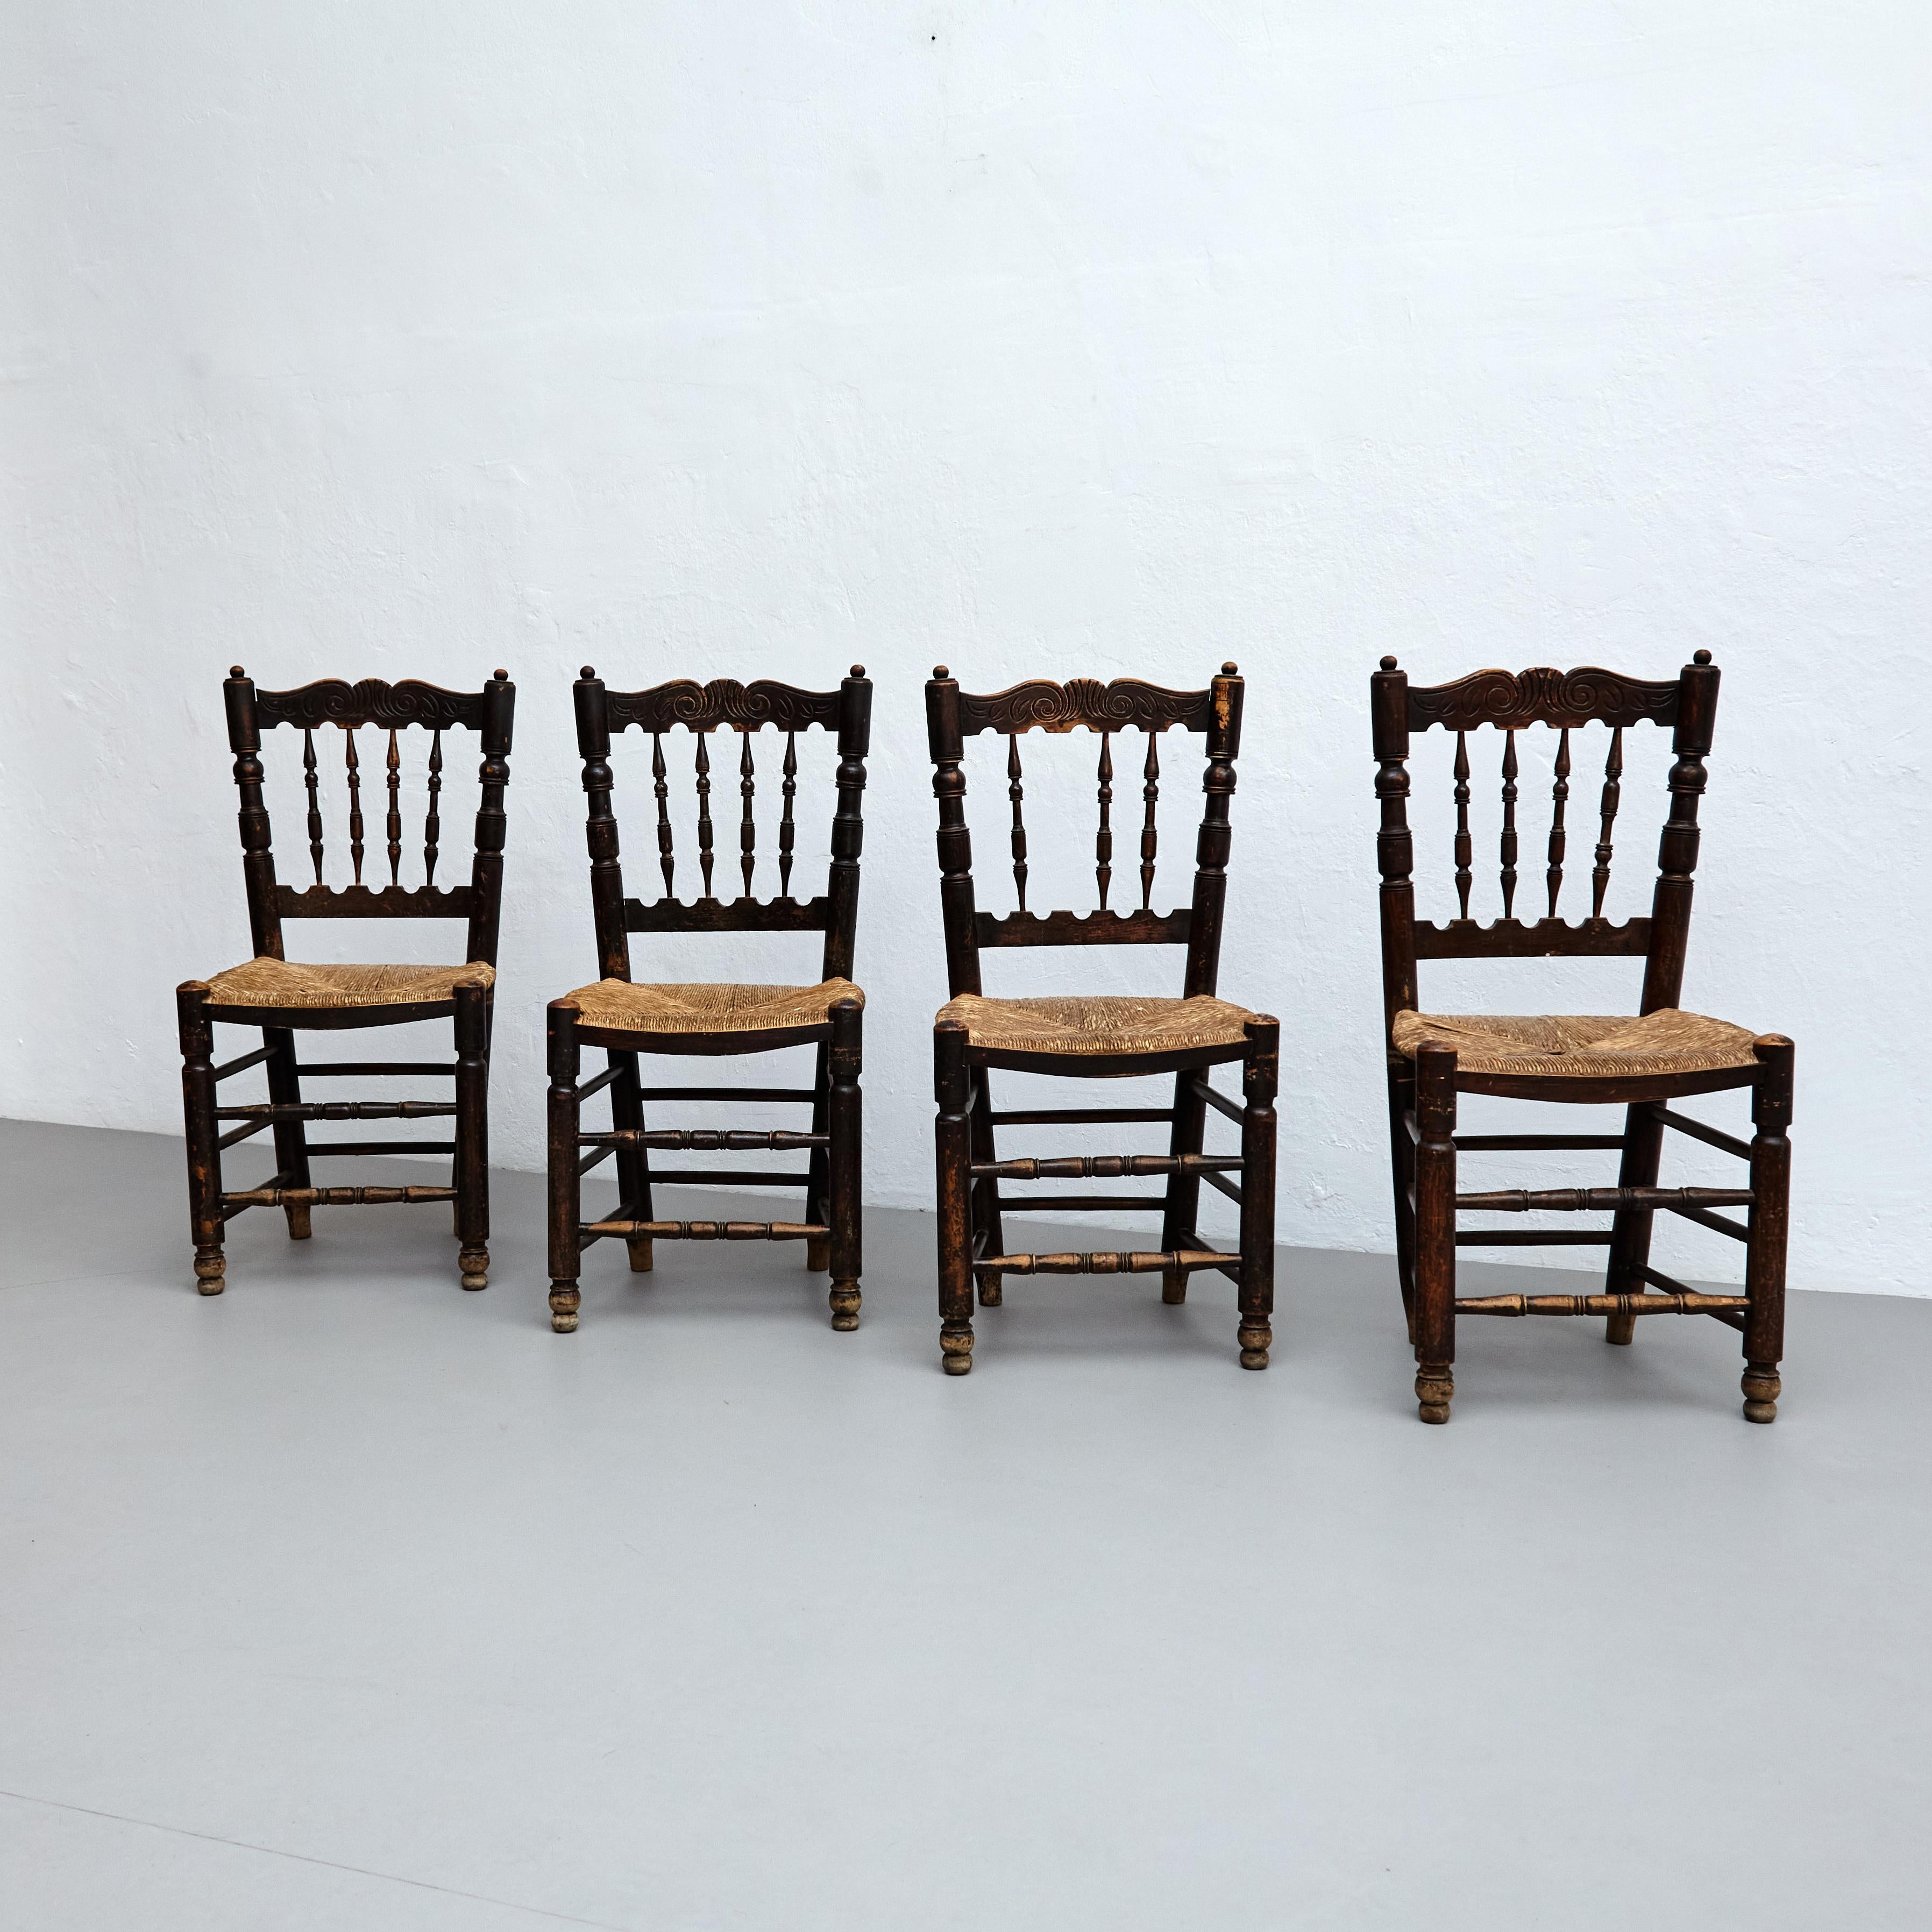 Satz von vier rustikalen französischen Holzstühlen.

Hergestellt in Frankreich, um 1950.

In ursprünglichem Zustand mit geringen Gebrauchsspuren, die dem Alter und dem Gebrauch entsprechen, wobei eine schöne Patina erhalten bleibt.

MATERIALIEN: